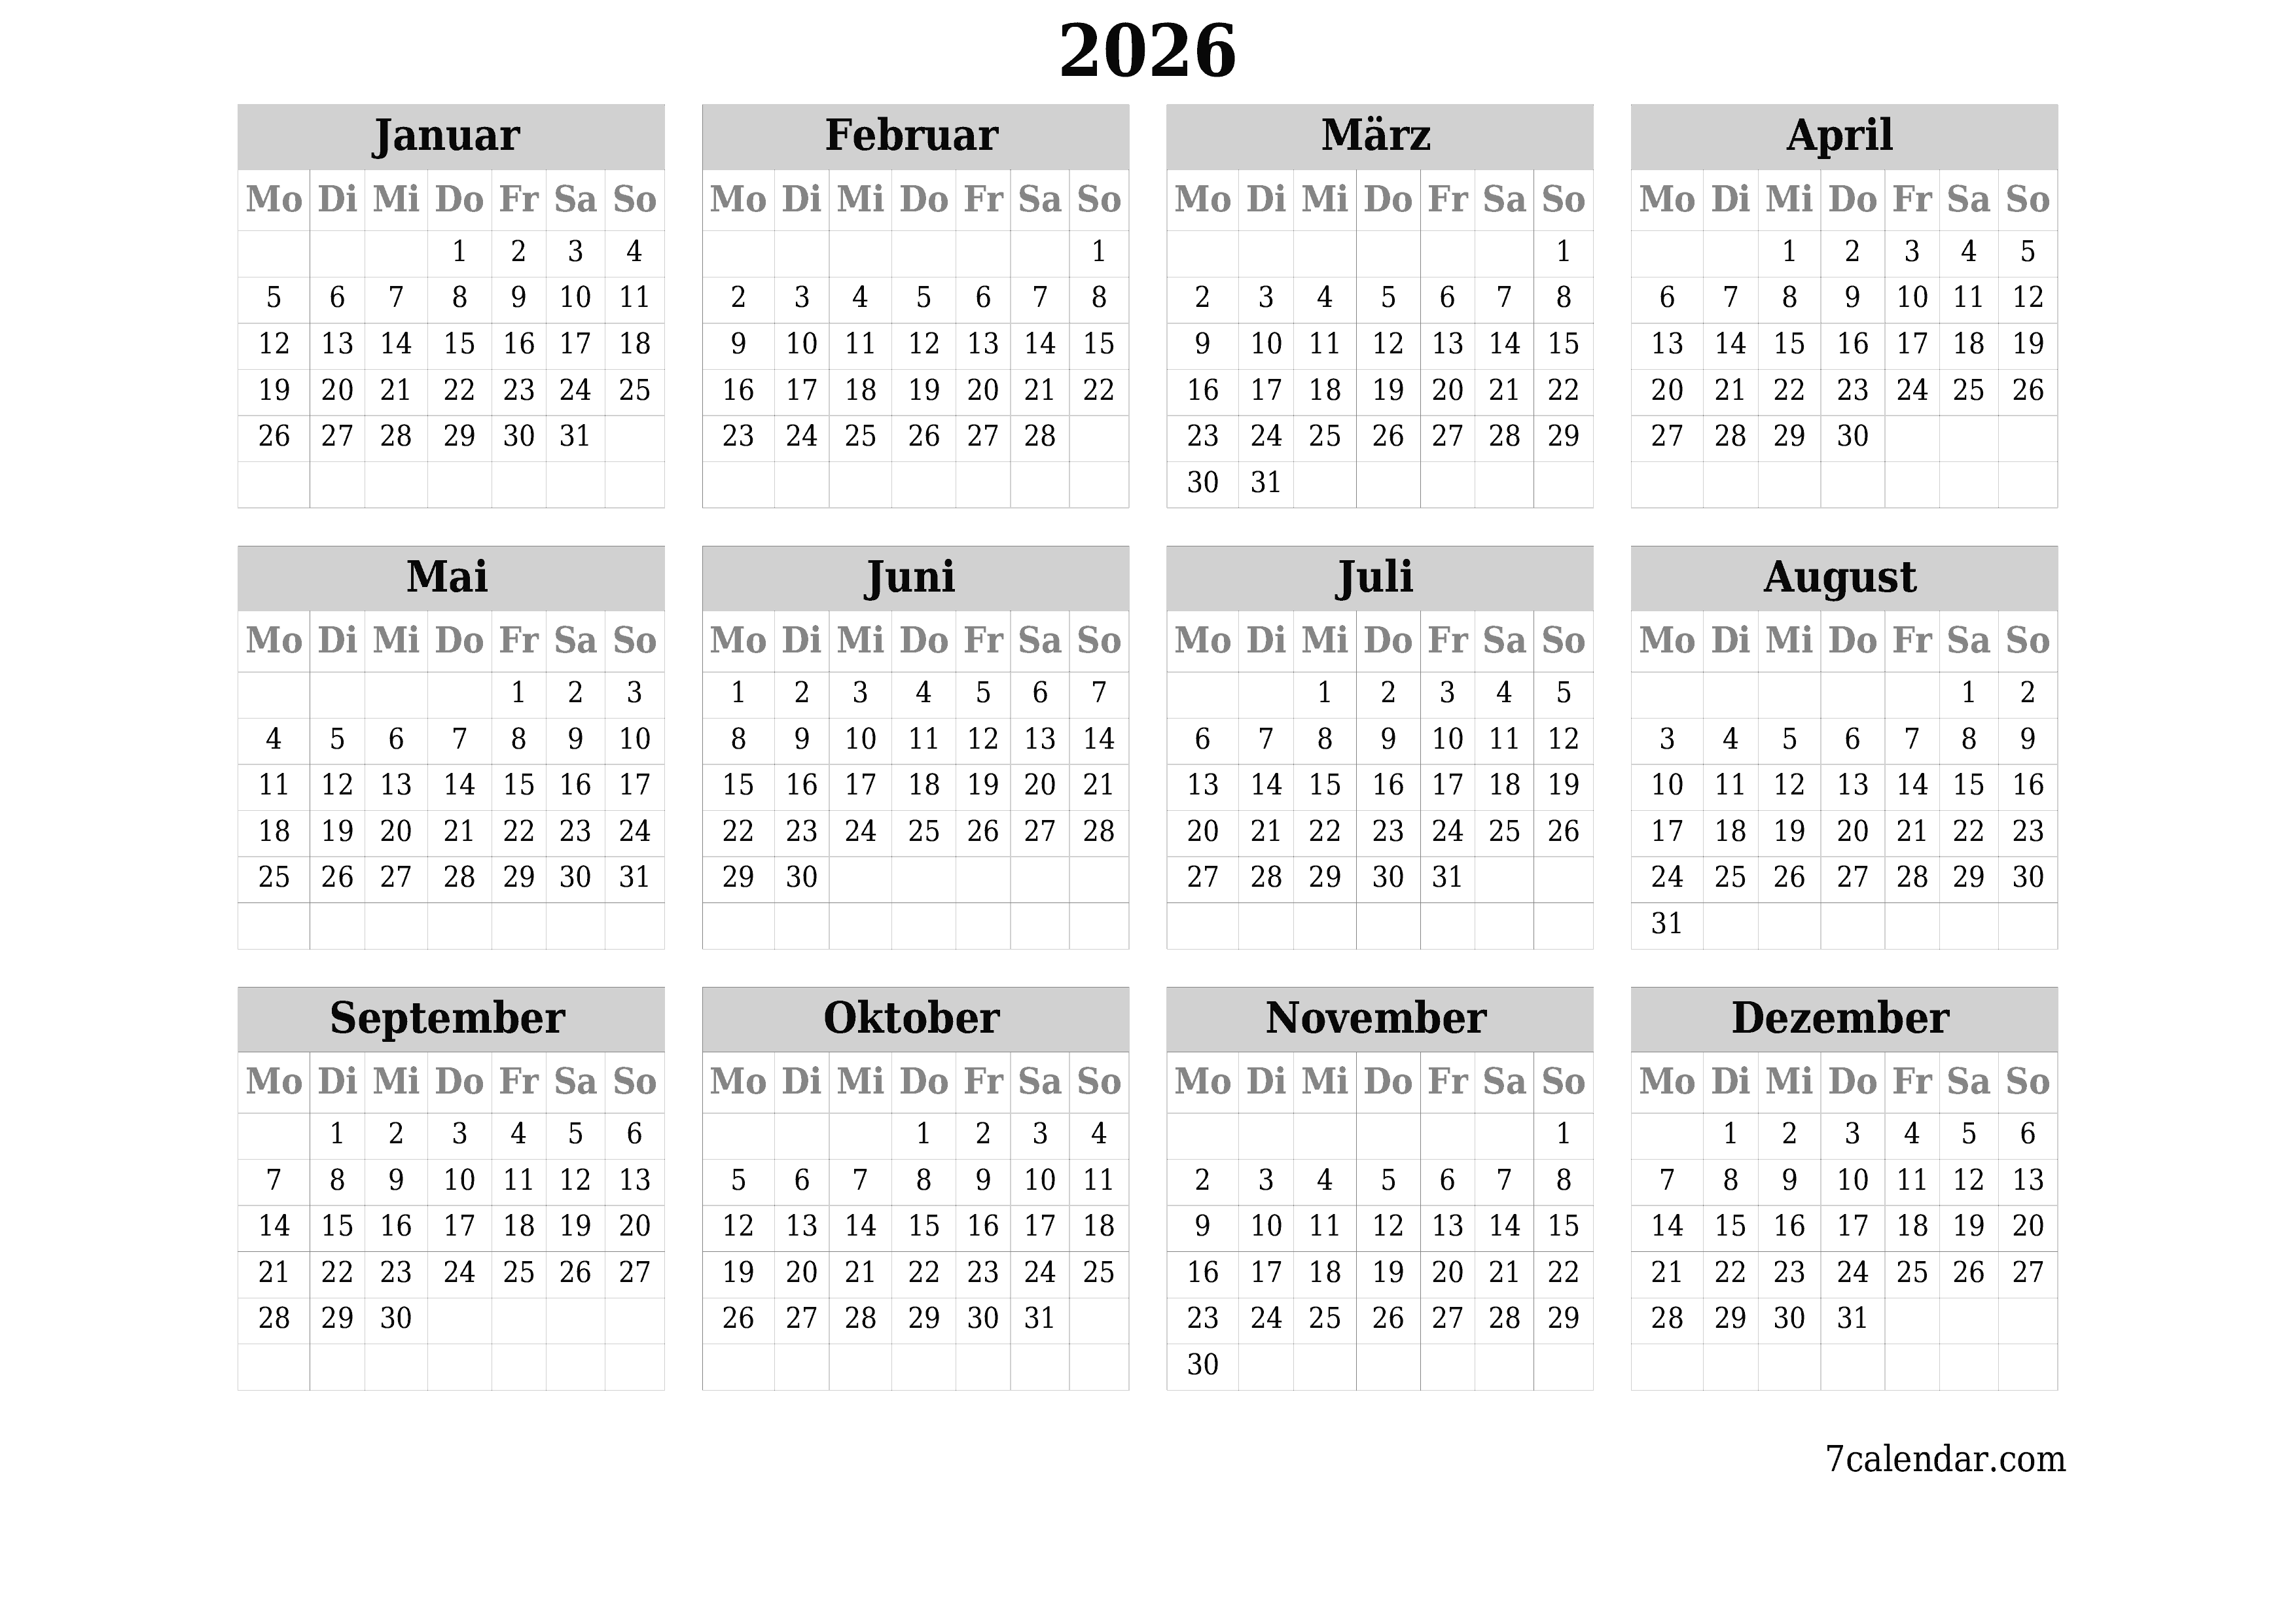 Jahresplanerkalender für das Jahr 2026 mit Notizen leeren, speichern und als PDF PNG German - 7calendar.com drucken